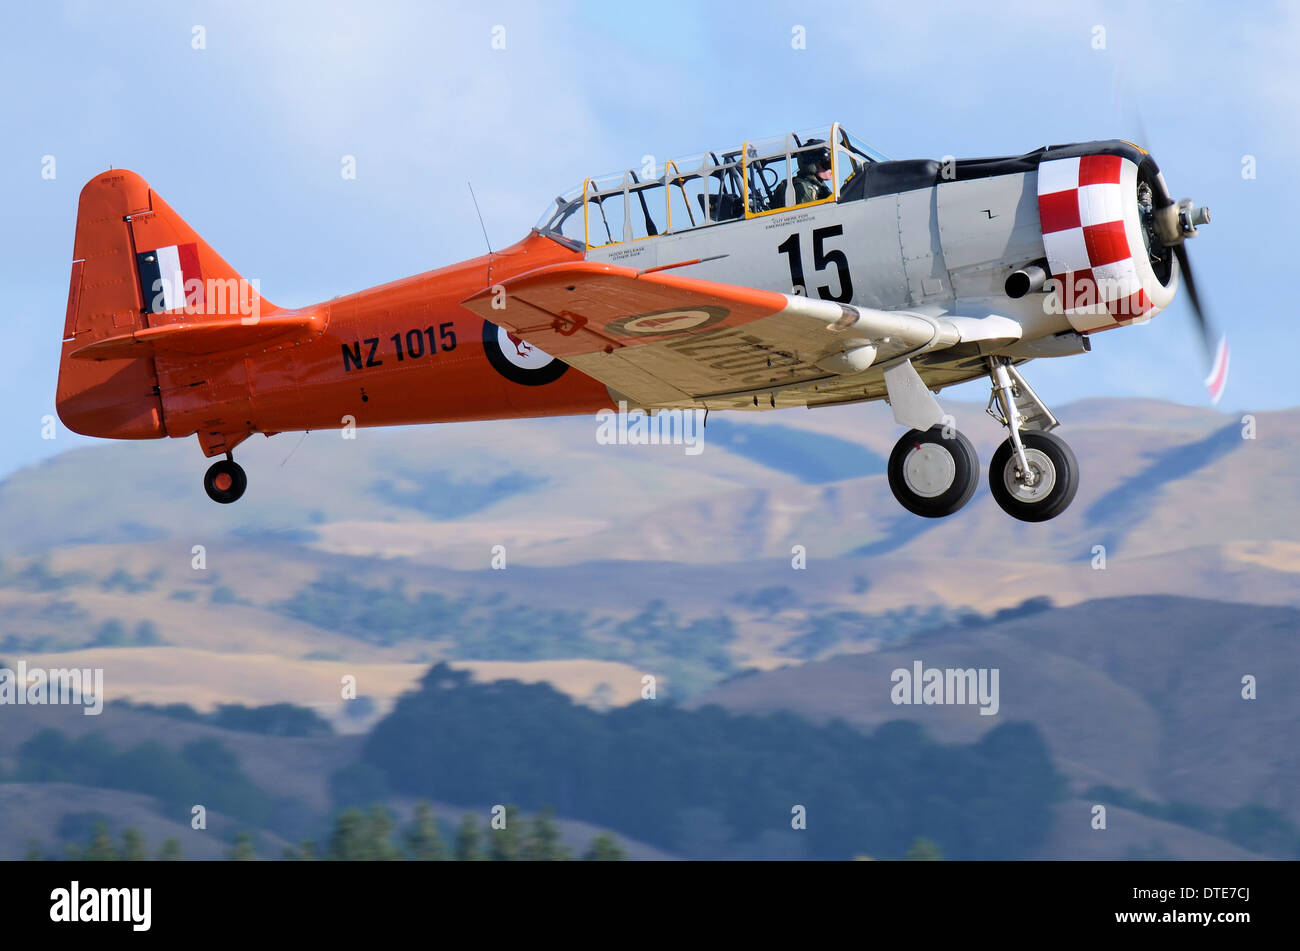 North American Aviation T-6 Texan, ein einmotoriges, fortgeschrittenes Trainerflugzeug, das Piloten der USA und anderer Luftstreitkräfte trainiert. Auf der NZ Airshow Stockfoto